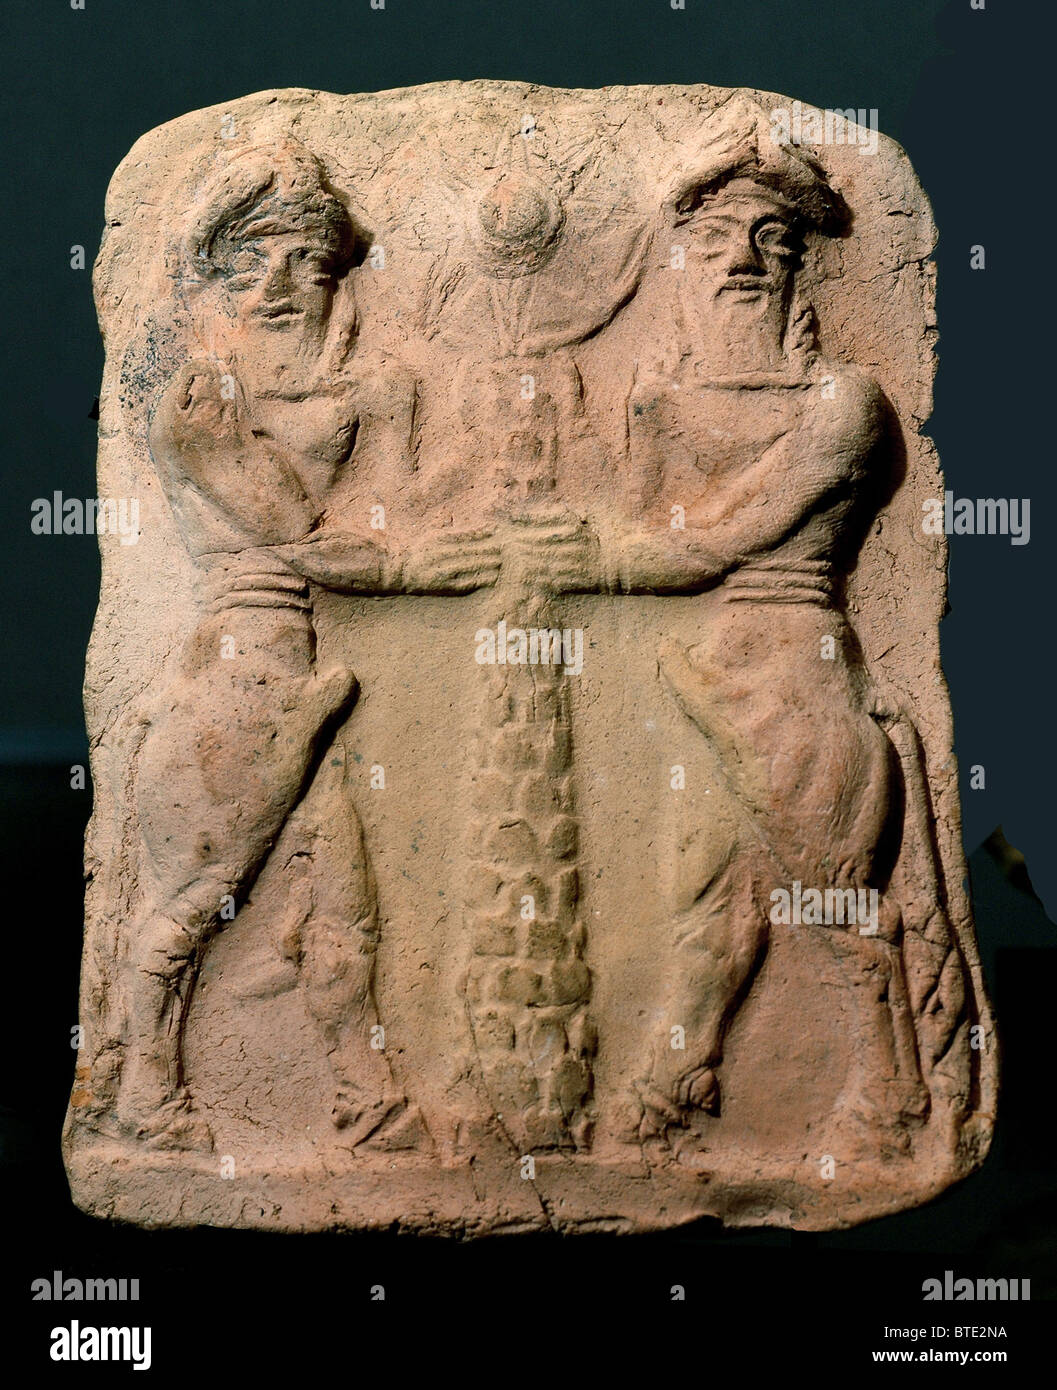 5340. Mesopotamian deities with the tree of life. Tel Asmar, Sumer, Mesopotamia Stock Photo